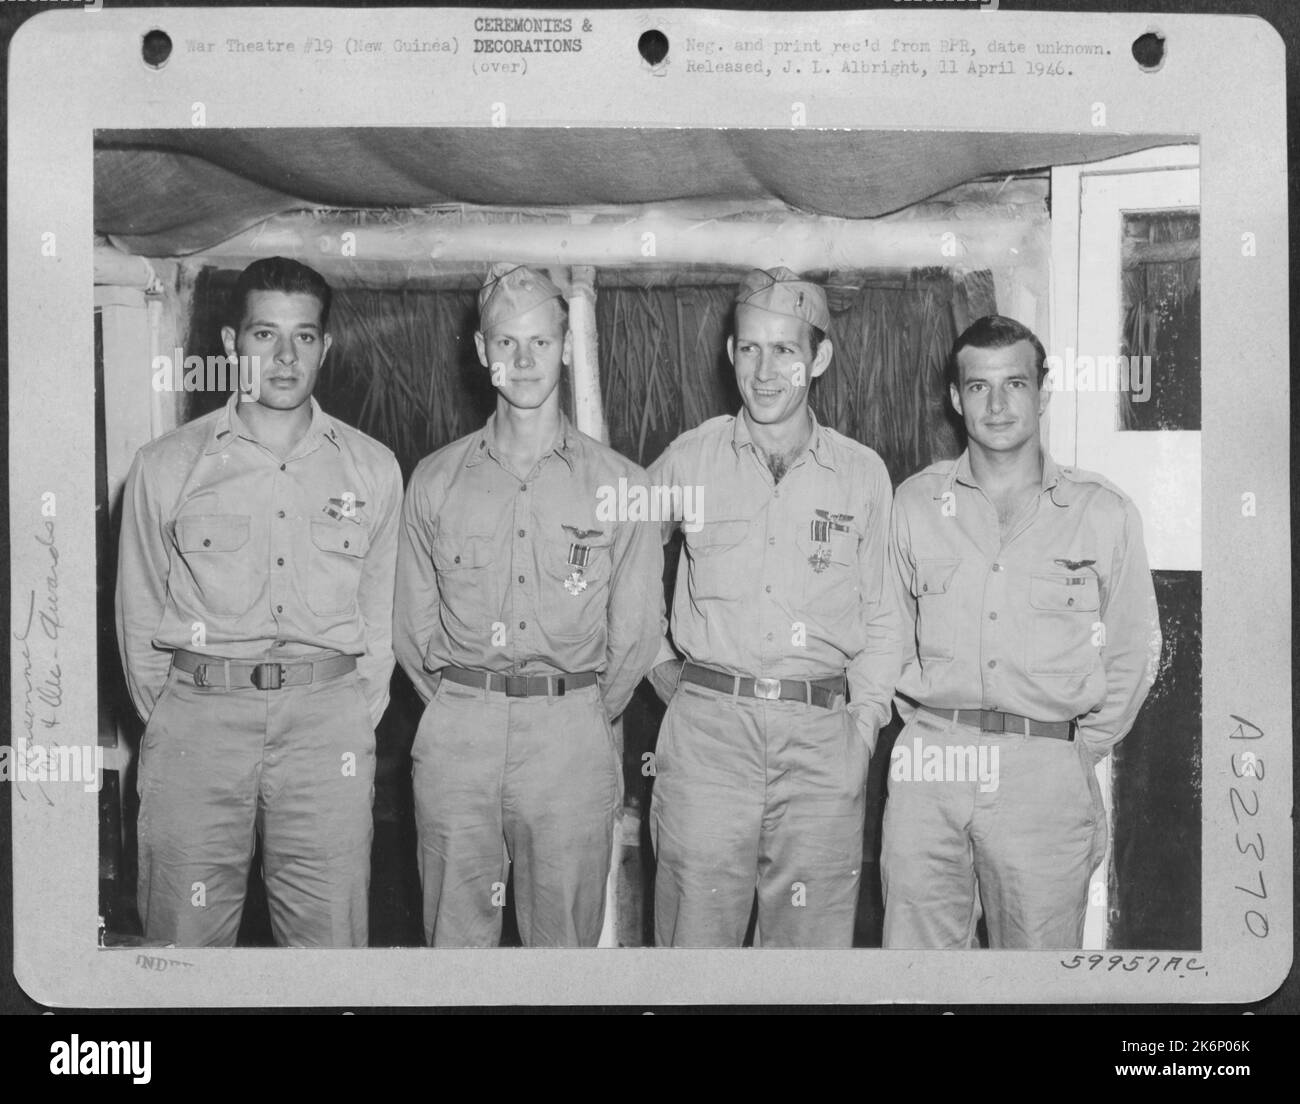 Neuguinea. Diese vier Verfolgungspiloten wurden während einer Zeremonie in Neuguinea dekoriert. Von links nach rechts: 1. LT. Richard T. Cella, N.Y., N.Y., Air Medal ; 1. LT. John C. Dunbar, Braddock, Pa., Distinguished Flying Cross; 1. LT. Lee C. Stockfoto